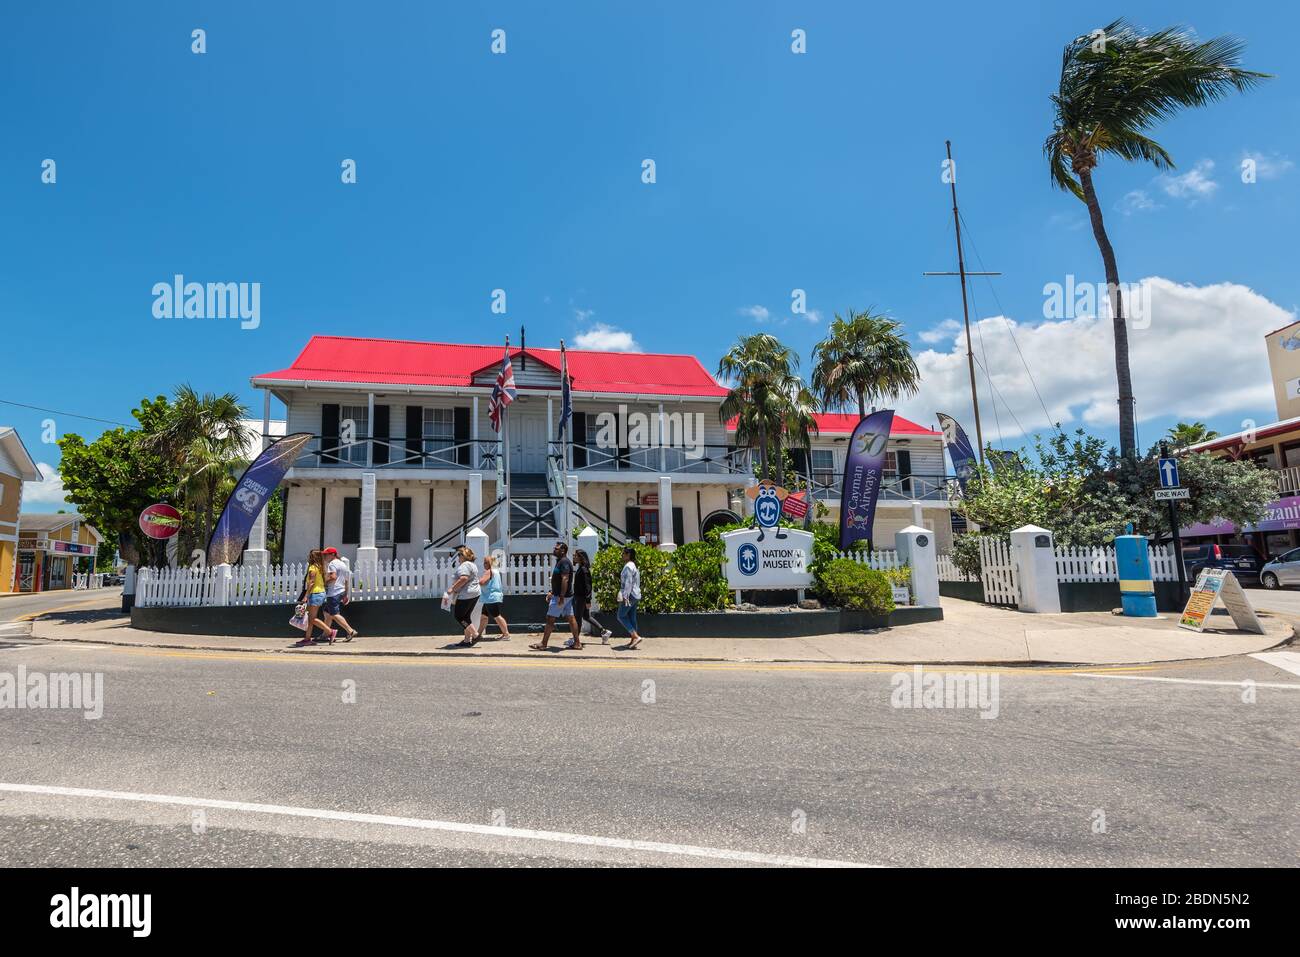 George Town, Islas Caimán, Indias Occidentales Británicas - 23 de abril de 2019: Turistas frente al Museo Nacional en el centro de George Town, Gran Caimán, Cay Foto de stock